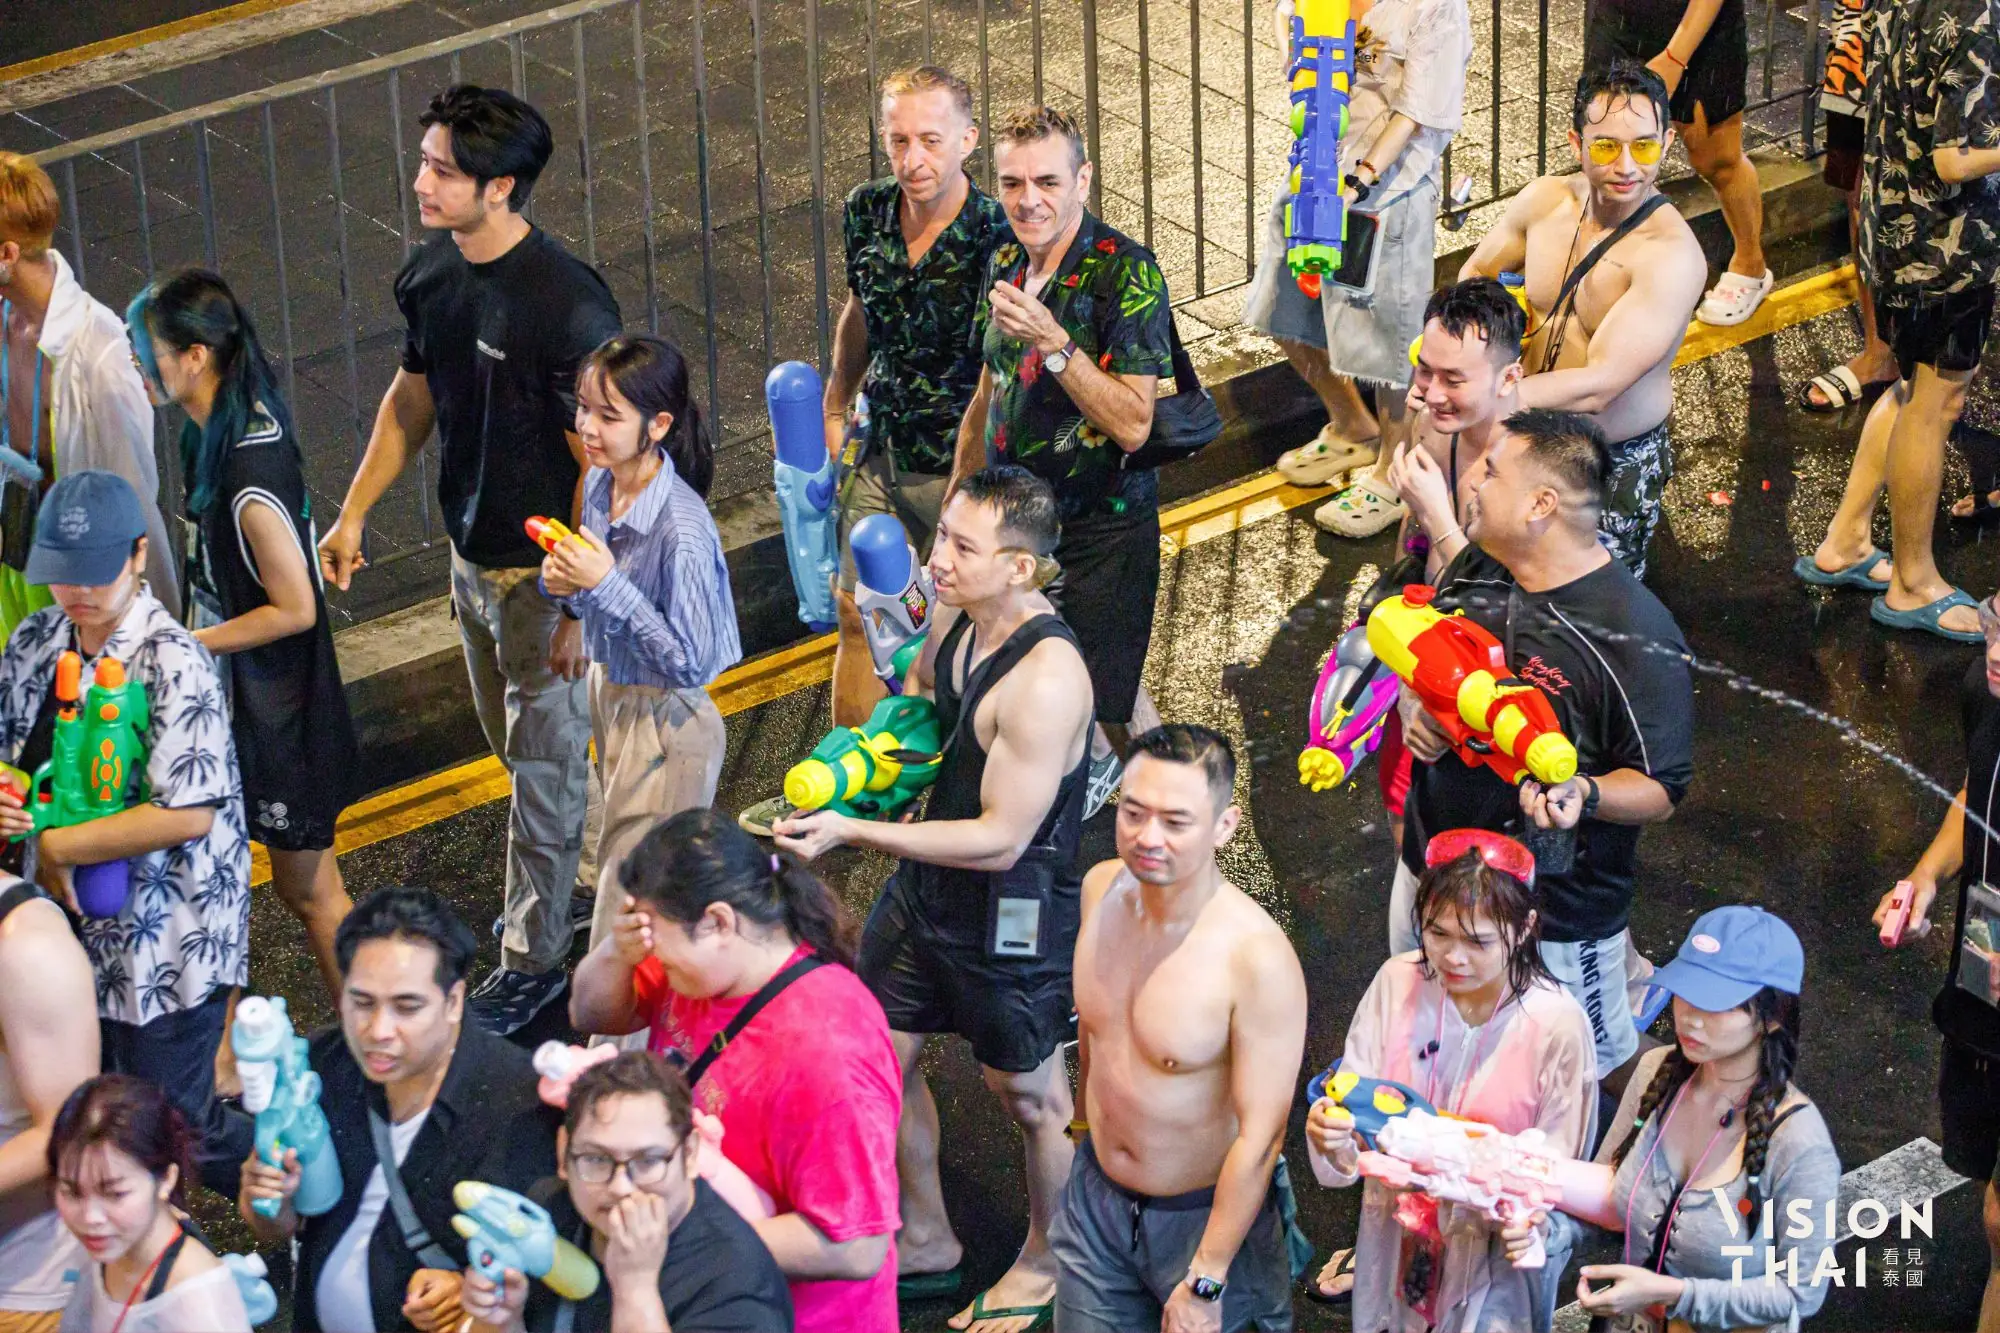 曼谷潑水節“是隆路”封路LGBTQ一級戰區實況 （來源：看見泰國 Vision Thai）